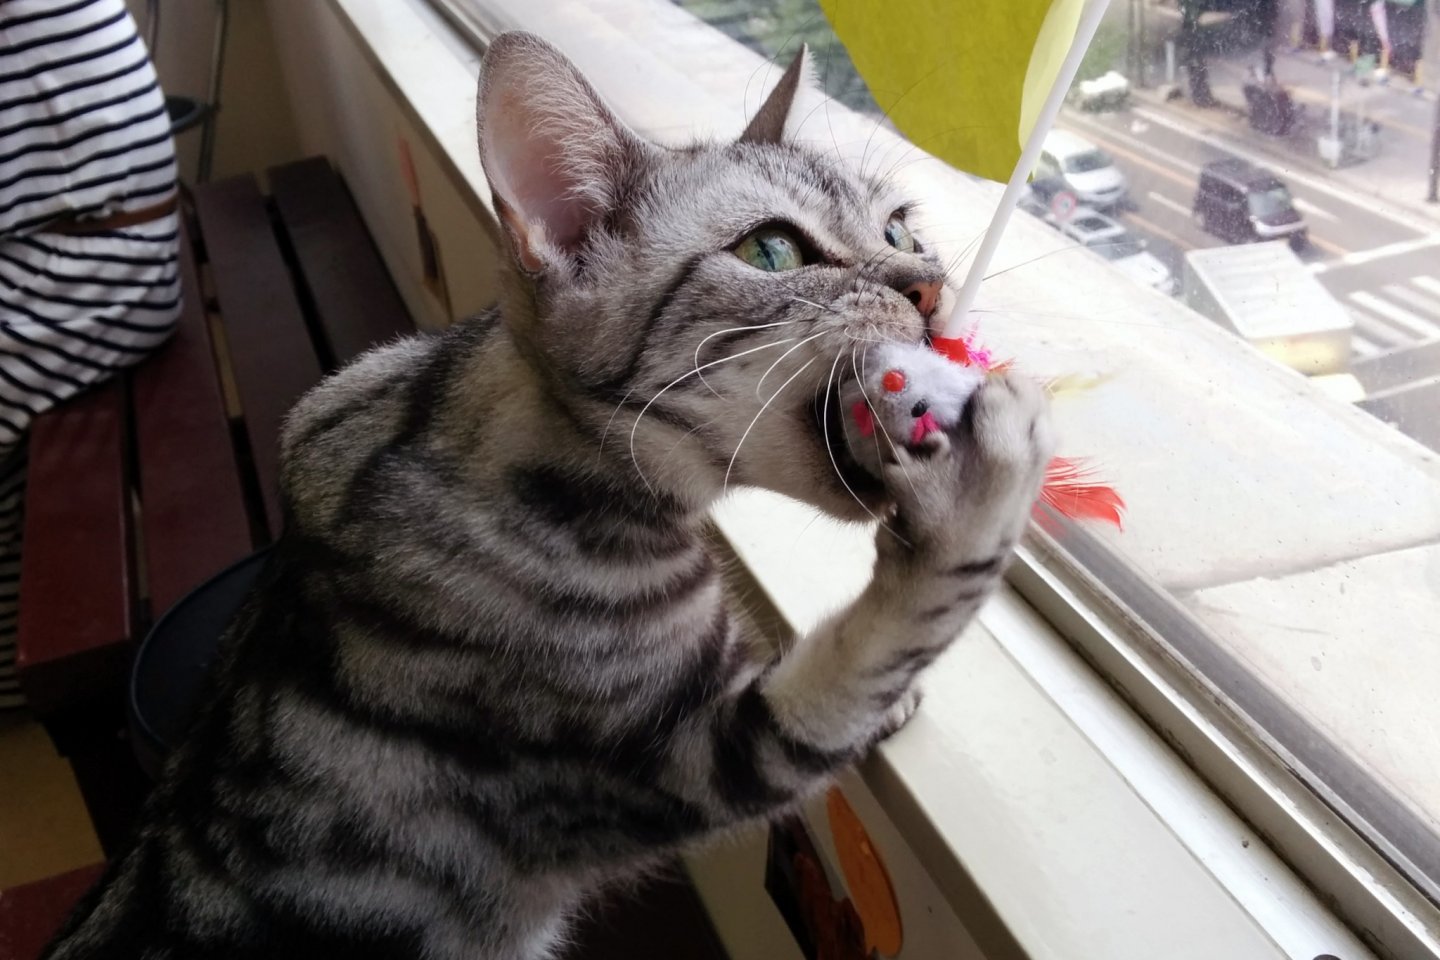 Beberapa kucing asyik bermain dengan mainan